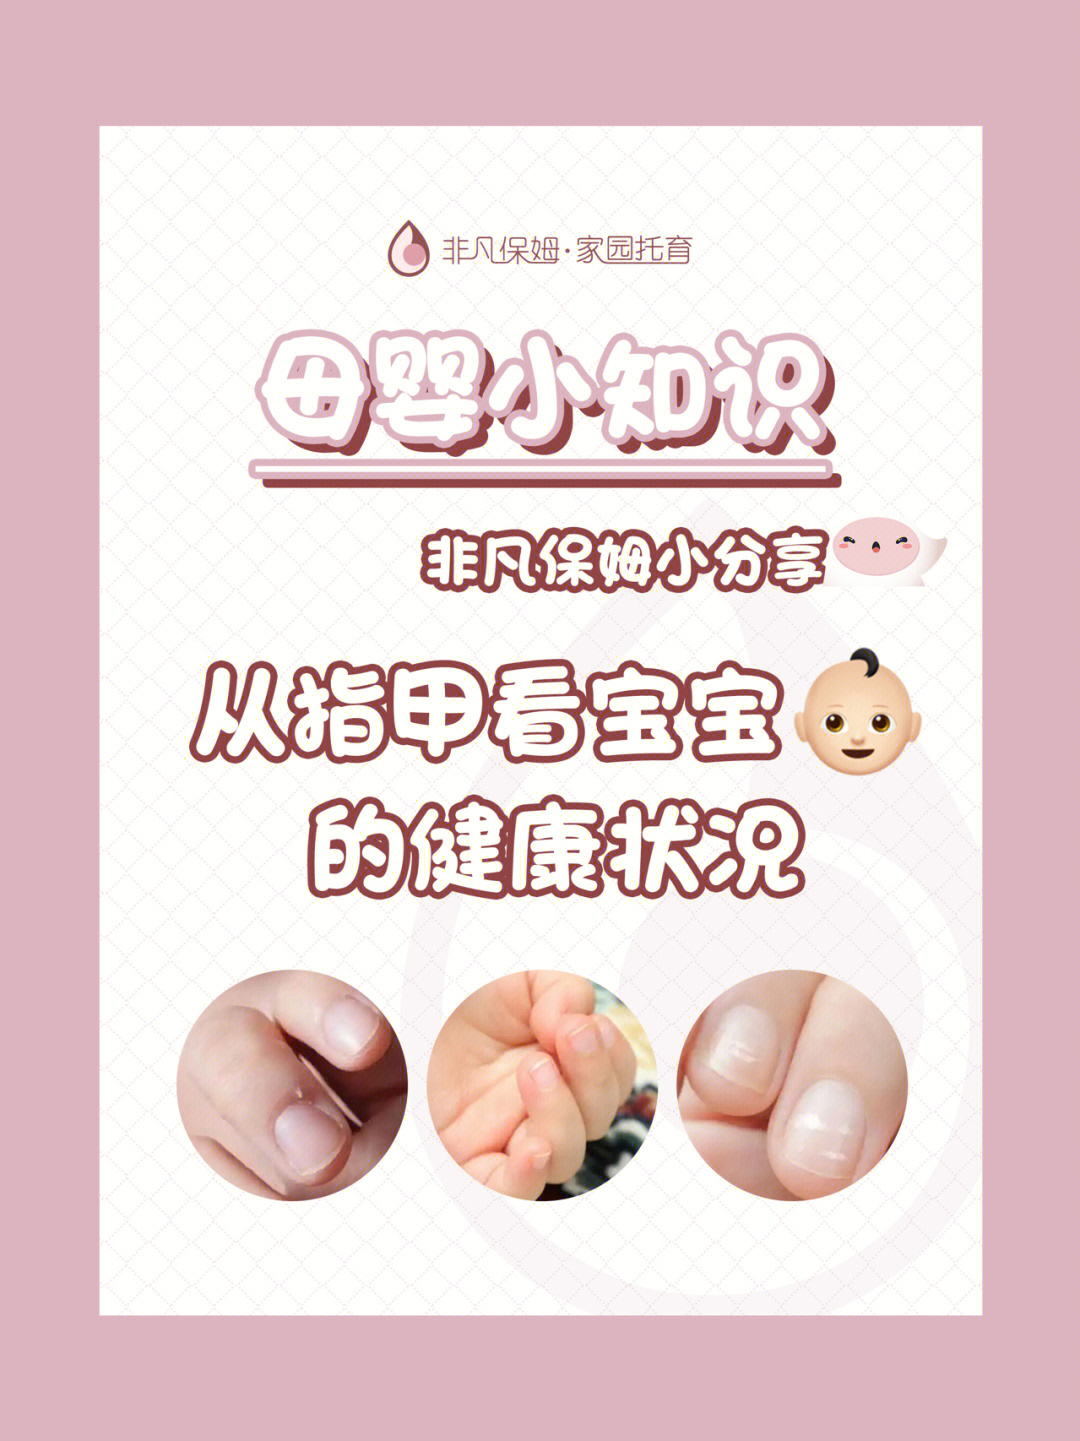 宝宝的指甲在正常情况下应该呈现出粉嫩嫩的颜色,而且表面光滑,透亮